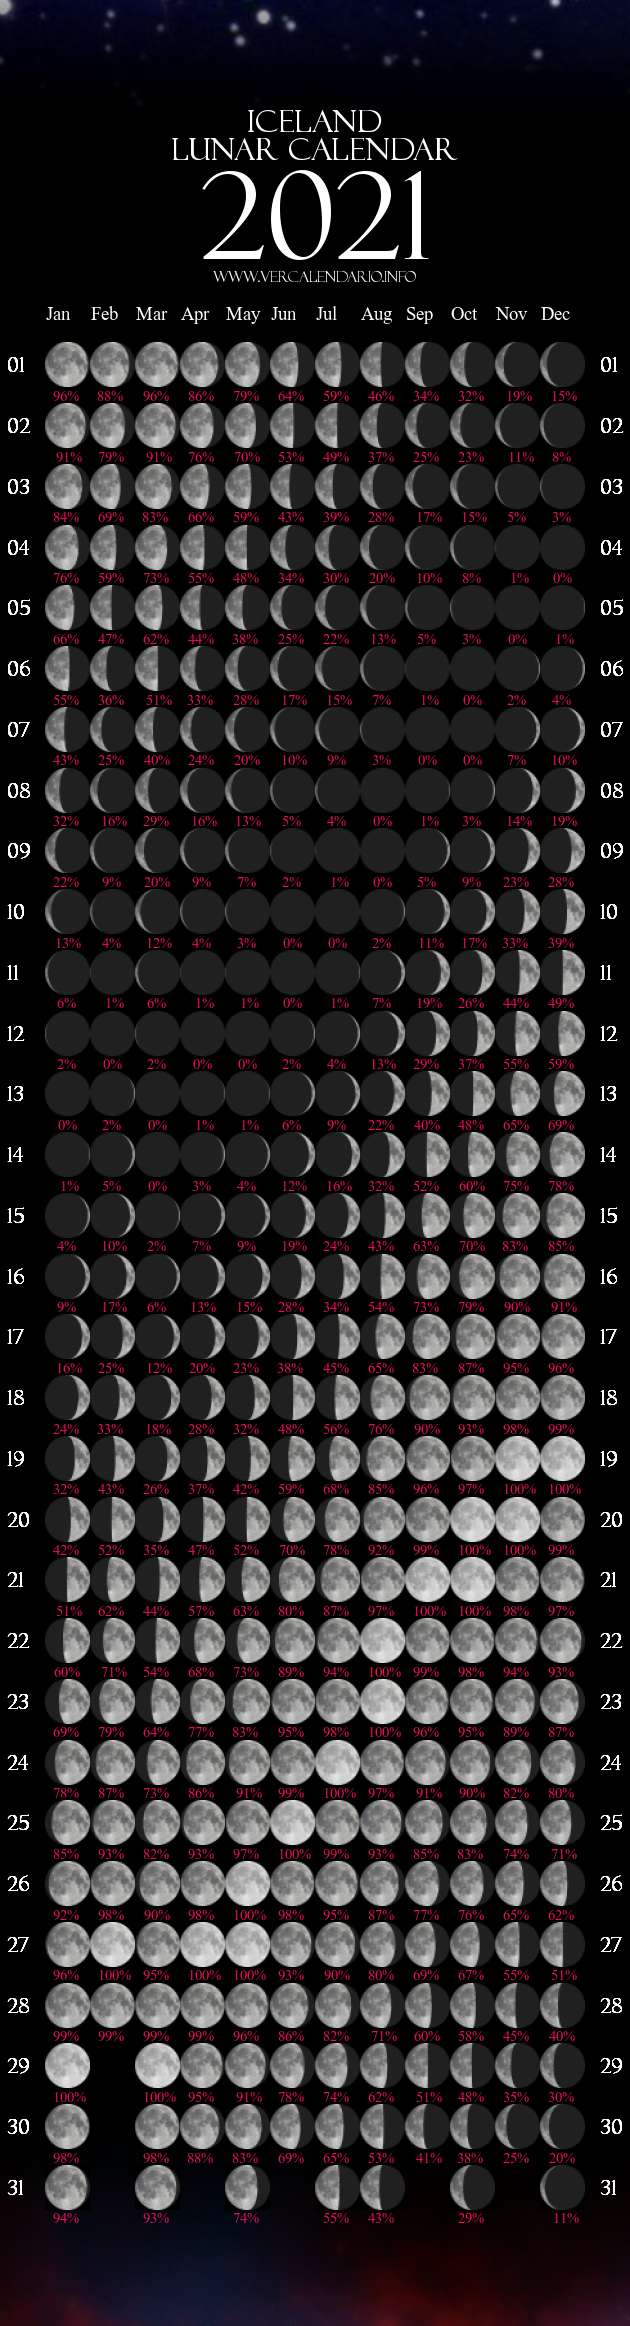 Lunar Calendar 2021 (Iceland)